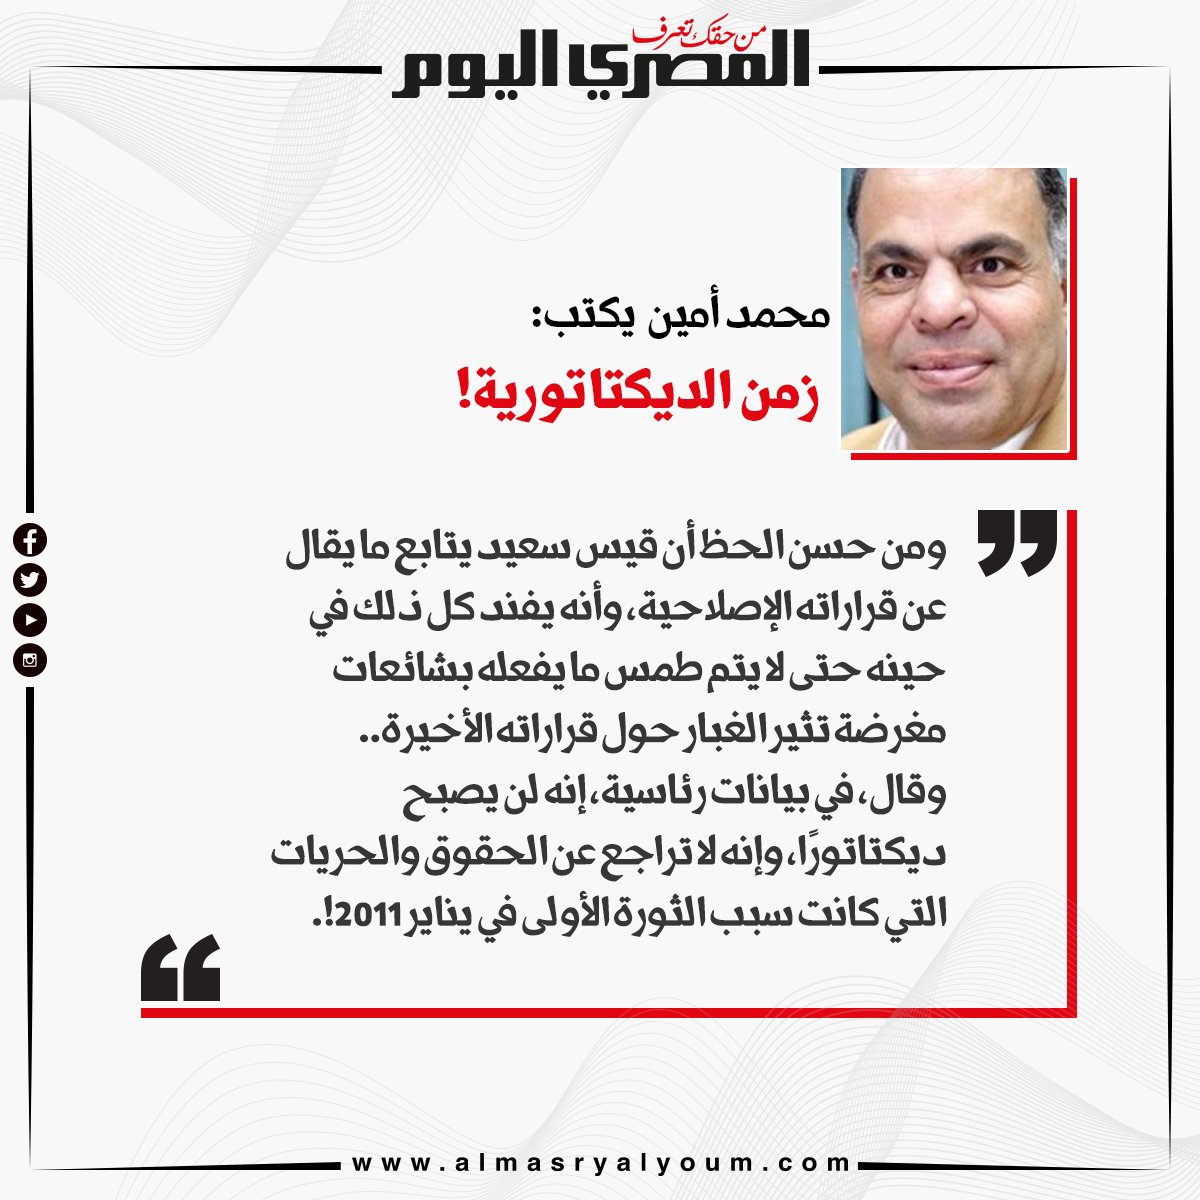 محمد أمين يكتب زمن الديكتاتورية!